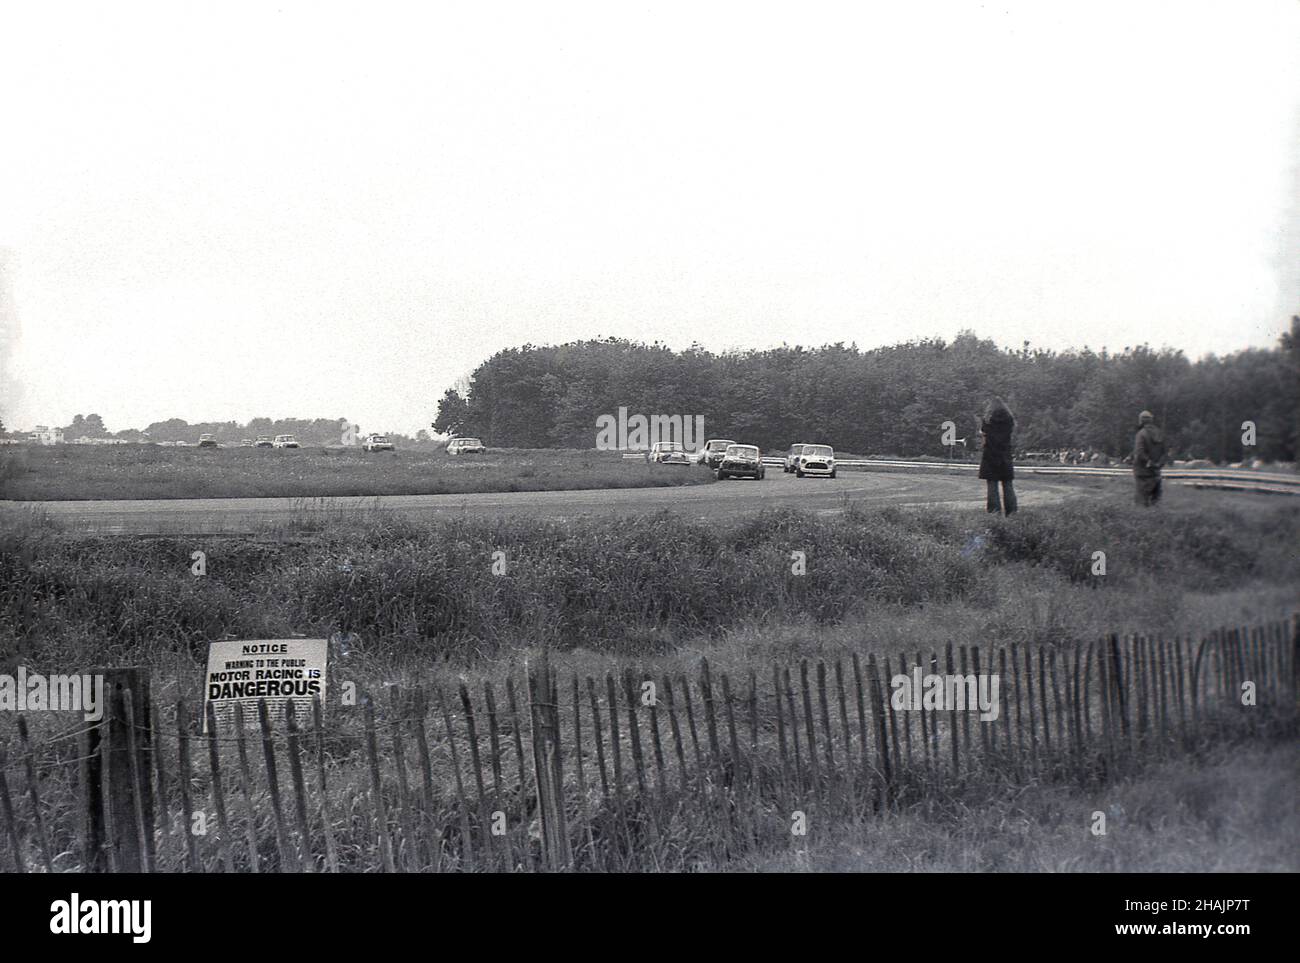 1960s, storico, motorsport, auto da corsa, Inghilterra, REGNO UNITO. Una donna e un uomo si levano in piedi sull'erba accanto alla pista. Un piccolo avviso sull'erba da una breve recinzione in legno dice, Motor Racing è PERICOLOSO. Foto Stock